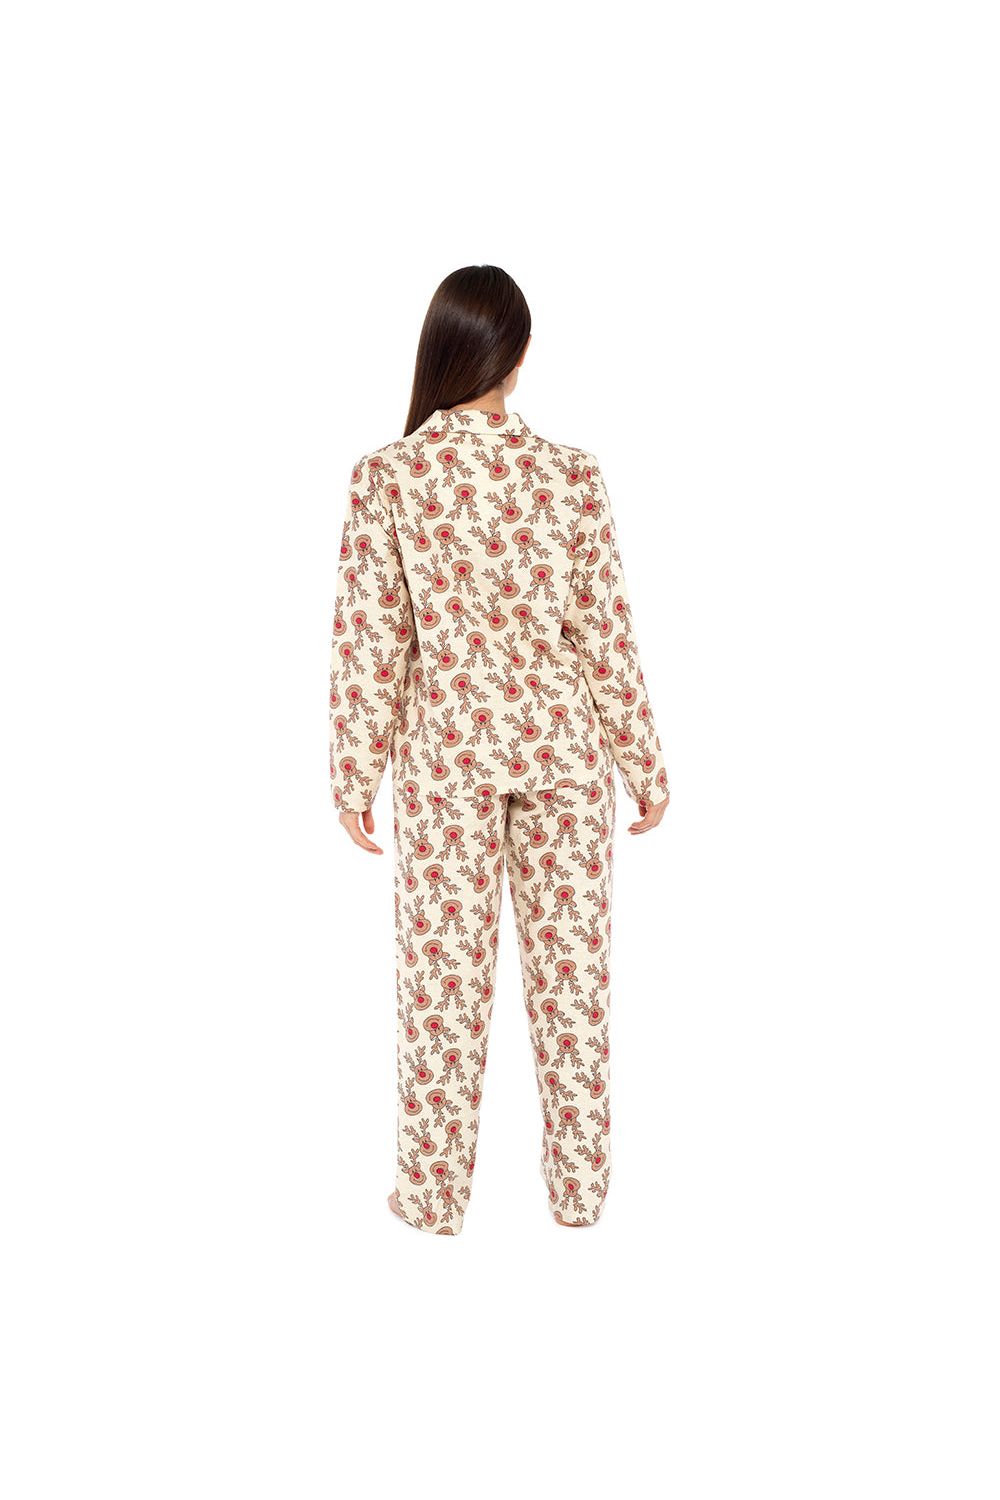 Ladies Rudolph Red nose  Reindeer Printed Flannel Long Pyjamas - Pyjamas.com